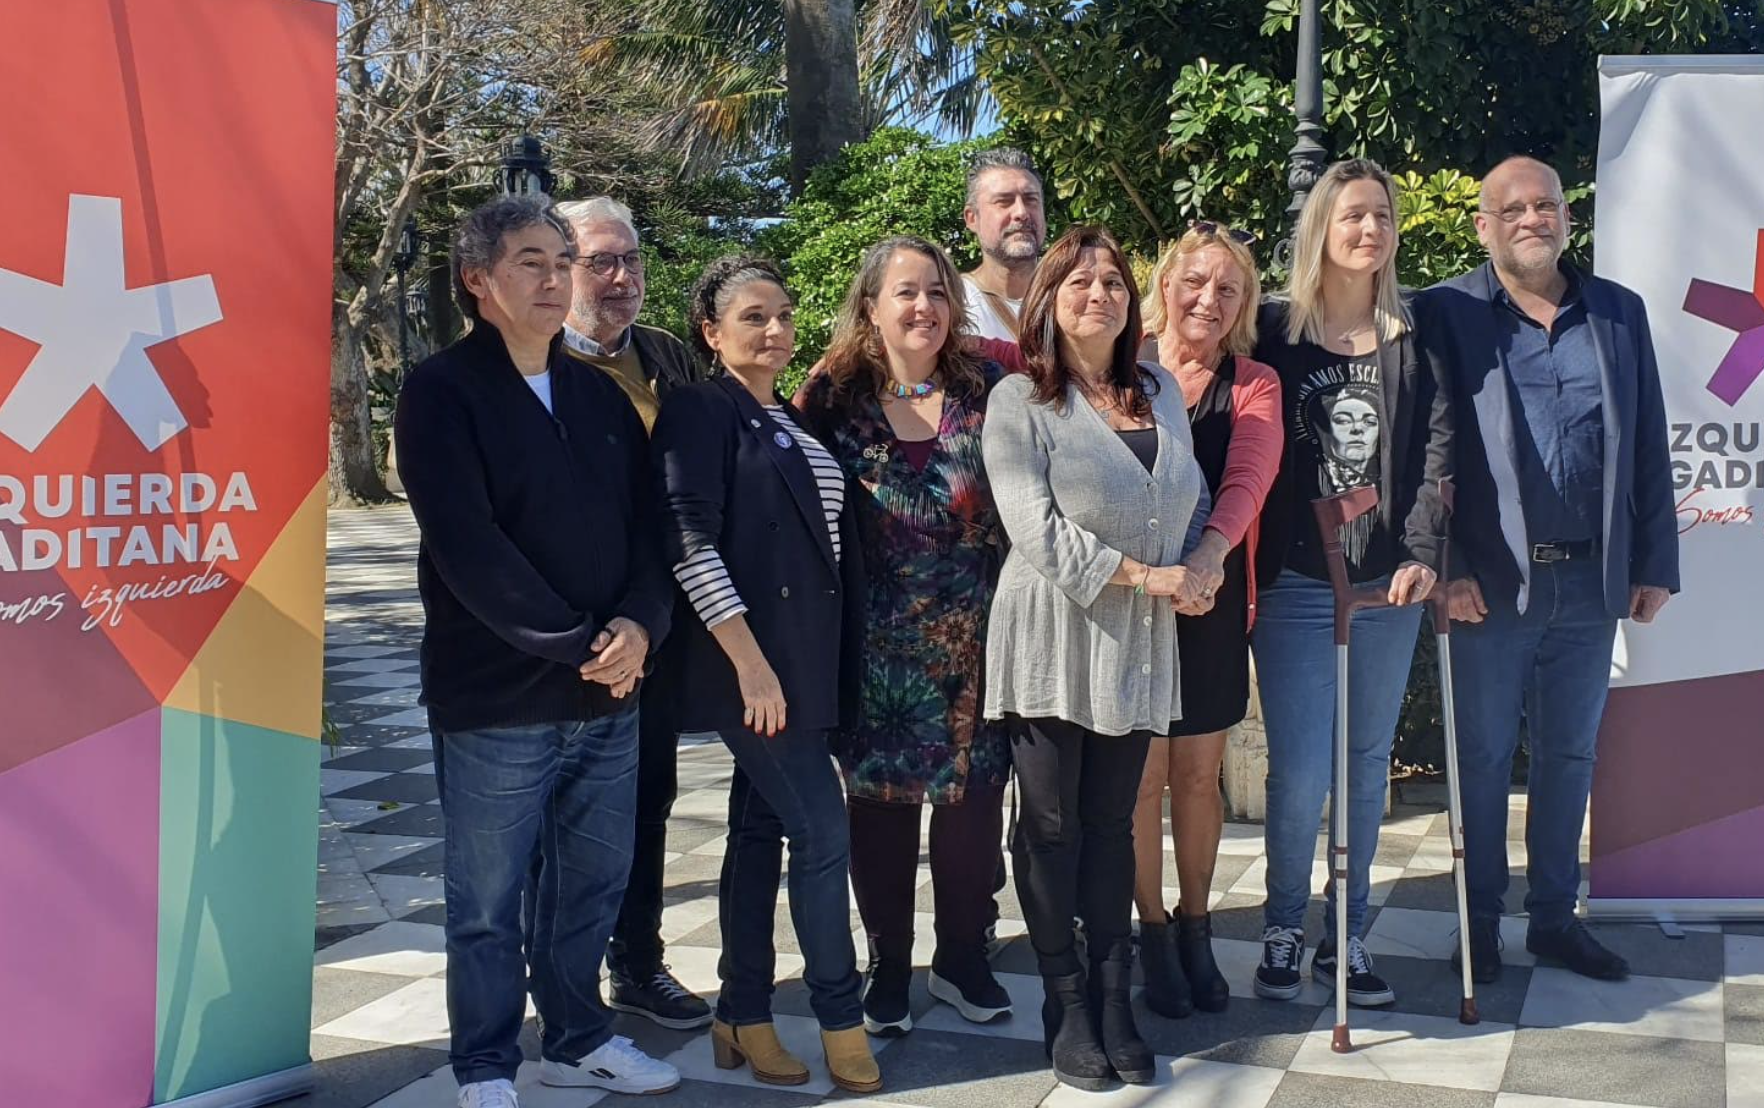 Helena Fernández, Marina Liberato y Laura Cubero son las cabezas de lista de una confluencia que integra a IU, Ganar Cádiz, Podemos, Verdes Equo y Alternativa Republicana.